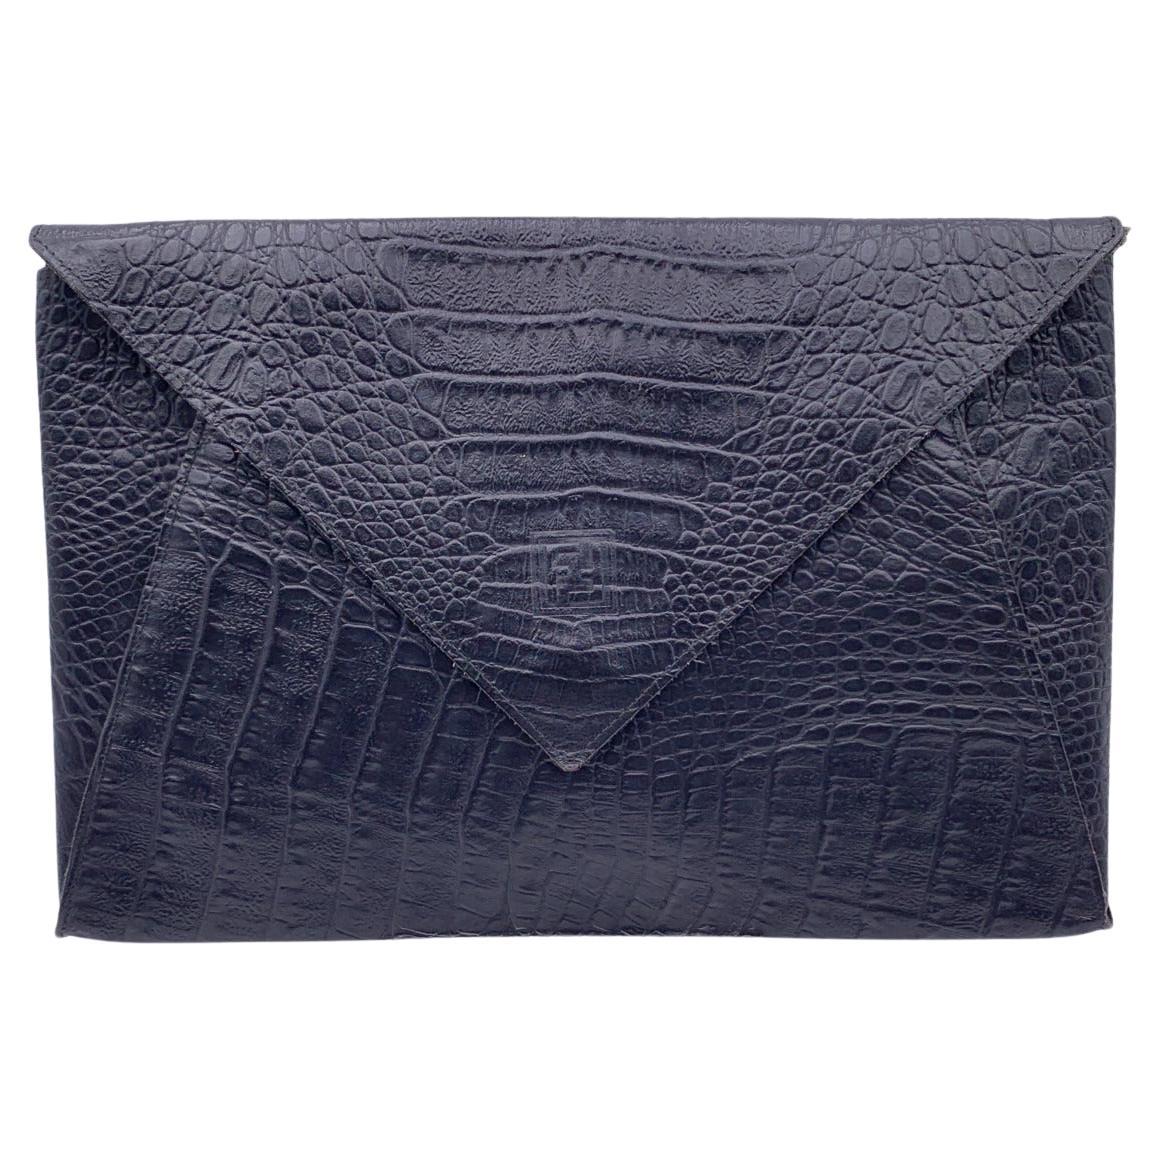 Fendi Vintage Black Embossed Portfolio Envelope Clutch Bag with Strap For Sale